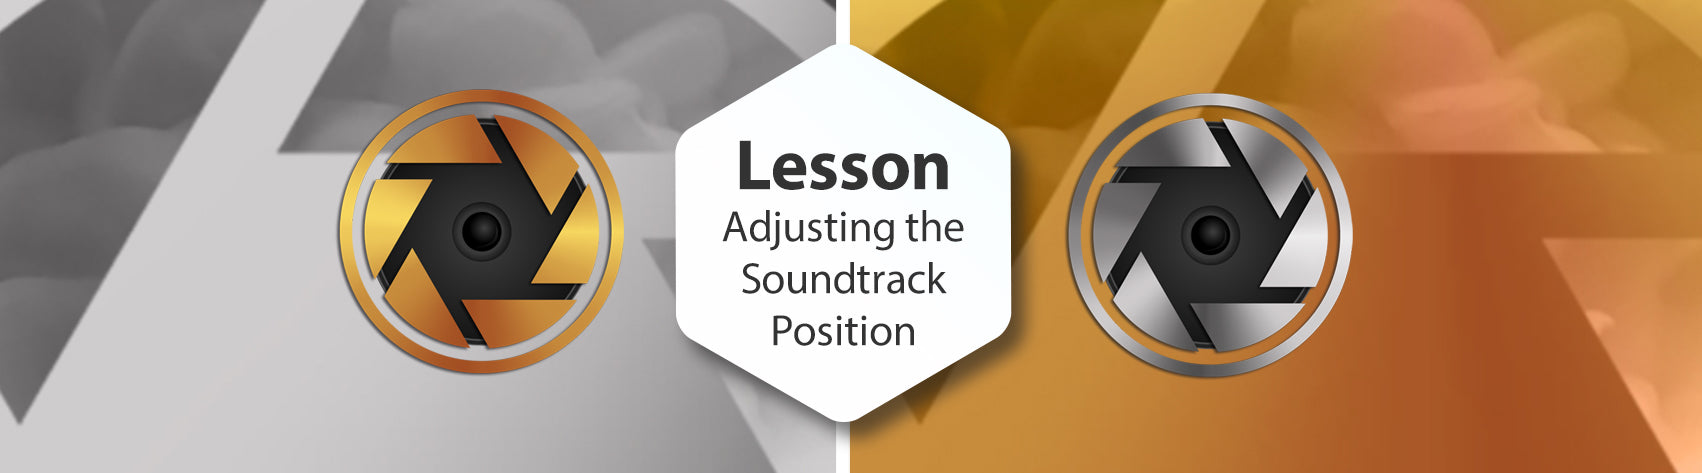 Lesson - Adjusting Soundtrack Position